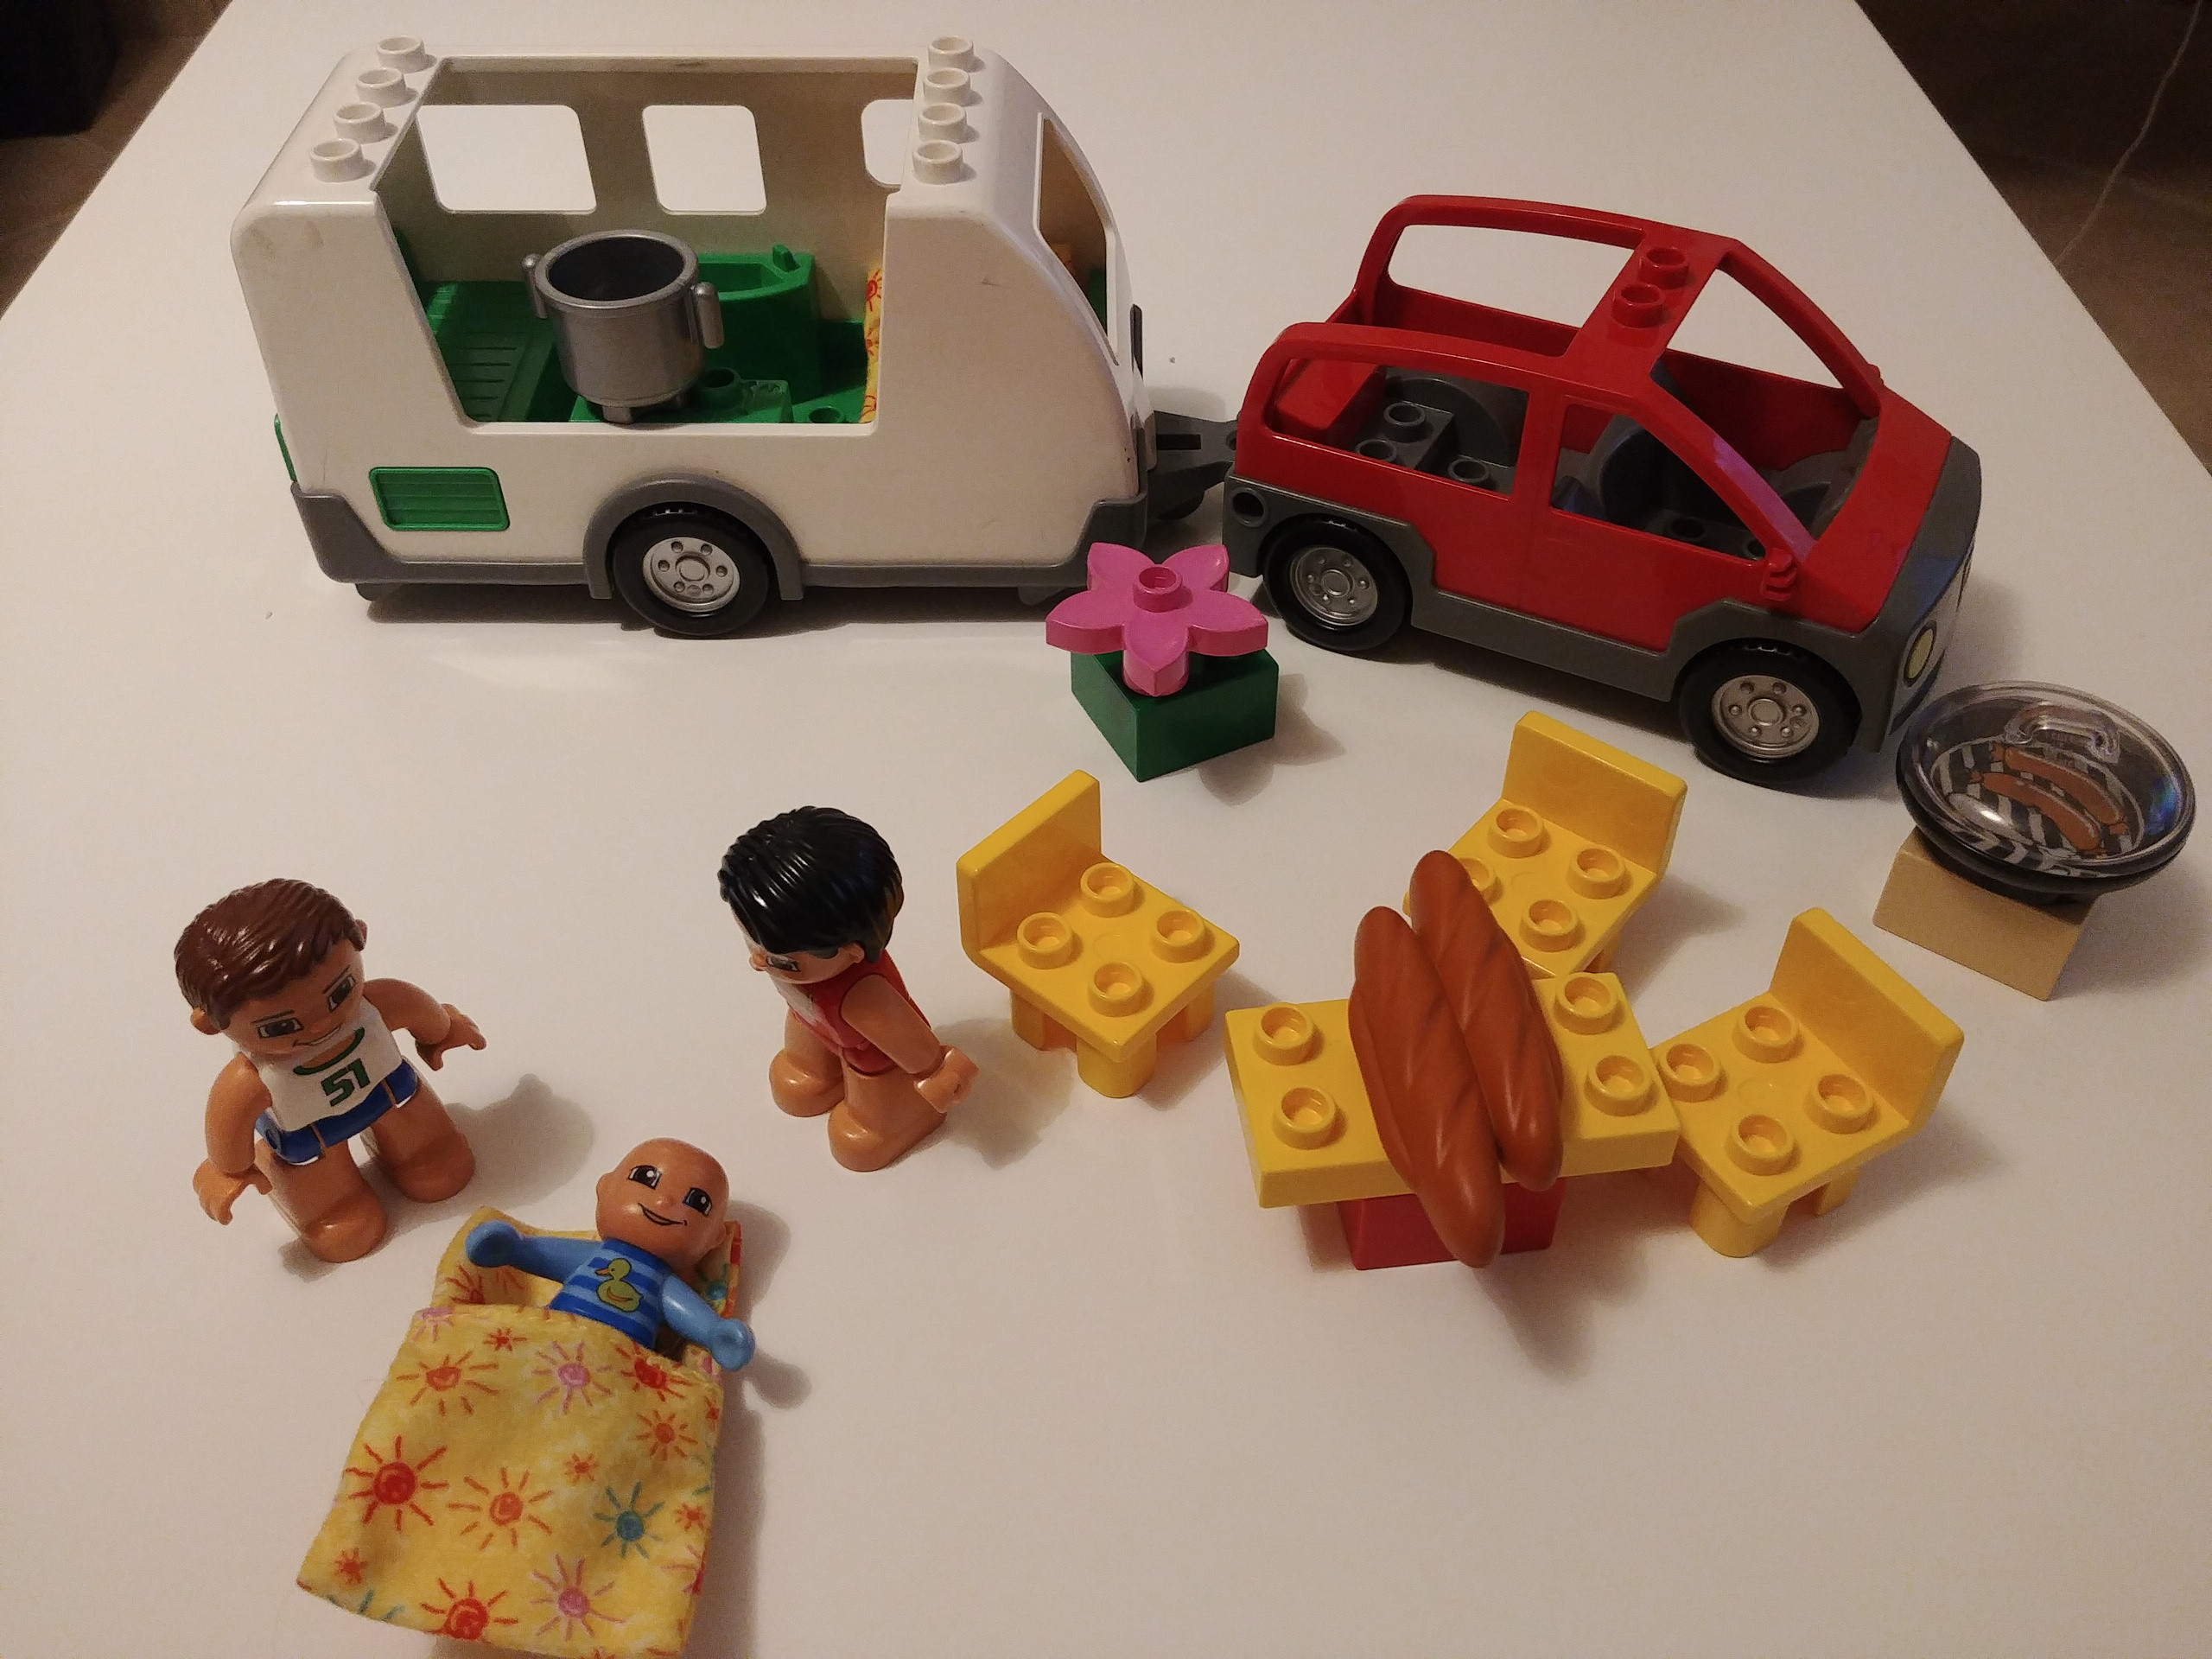 Lego Duplo La caravane 5655 | Vinted